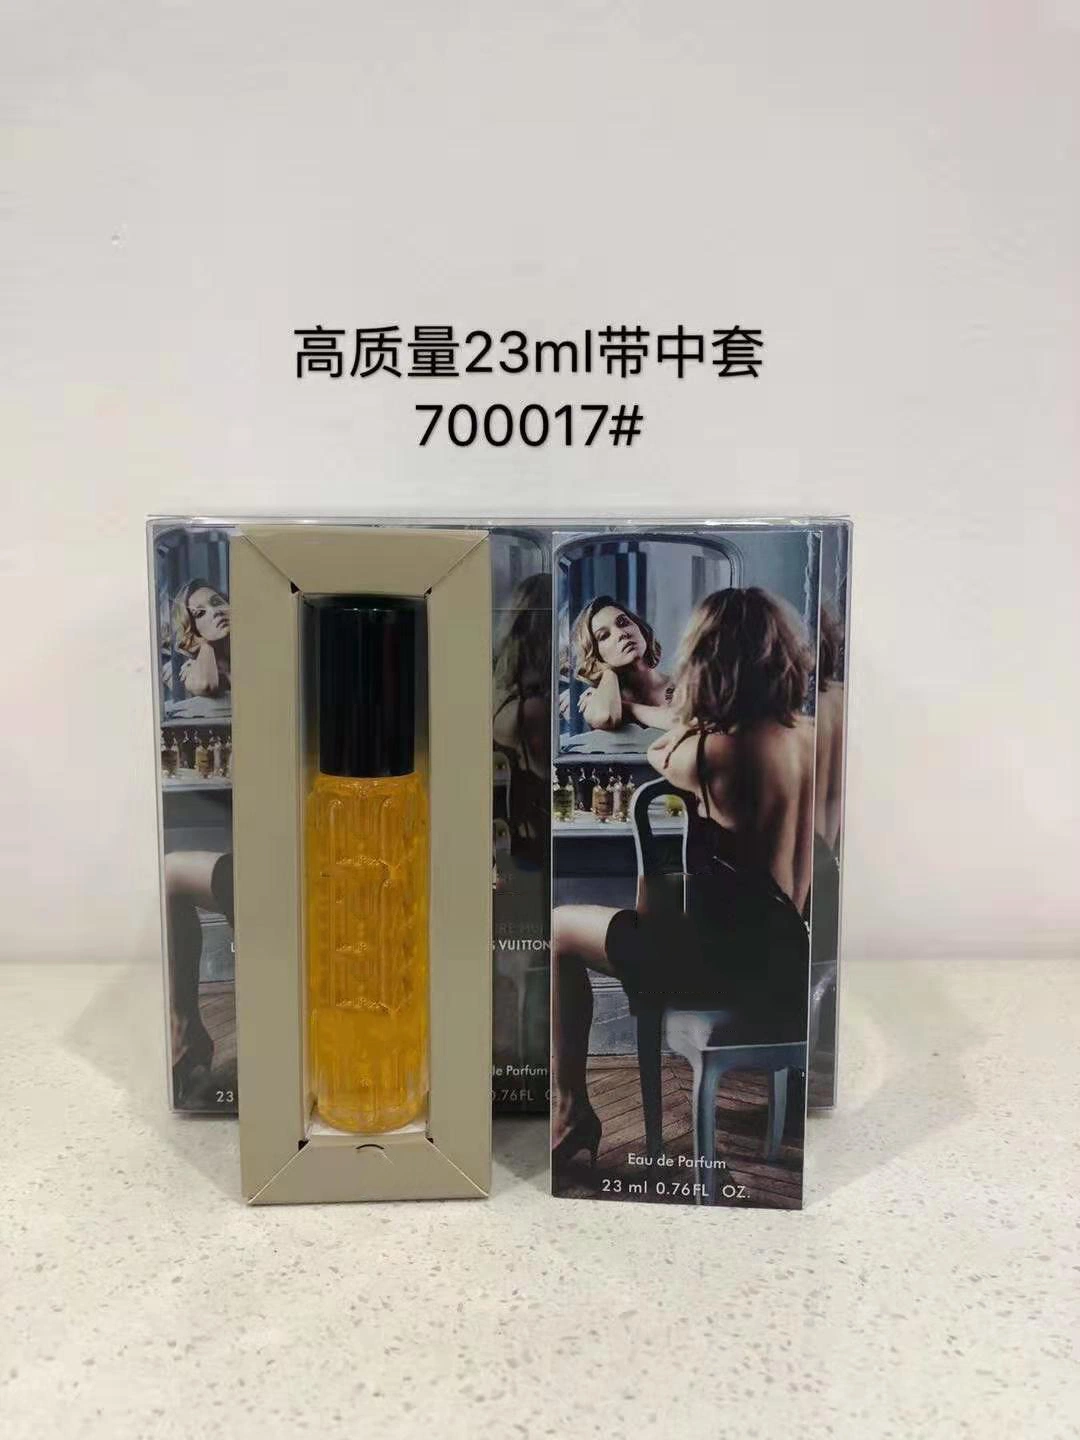 Rendimiento de alta calidad/alto costo y fragancia de larga duración 23ml Perfume mujeres/hombres Htx700017